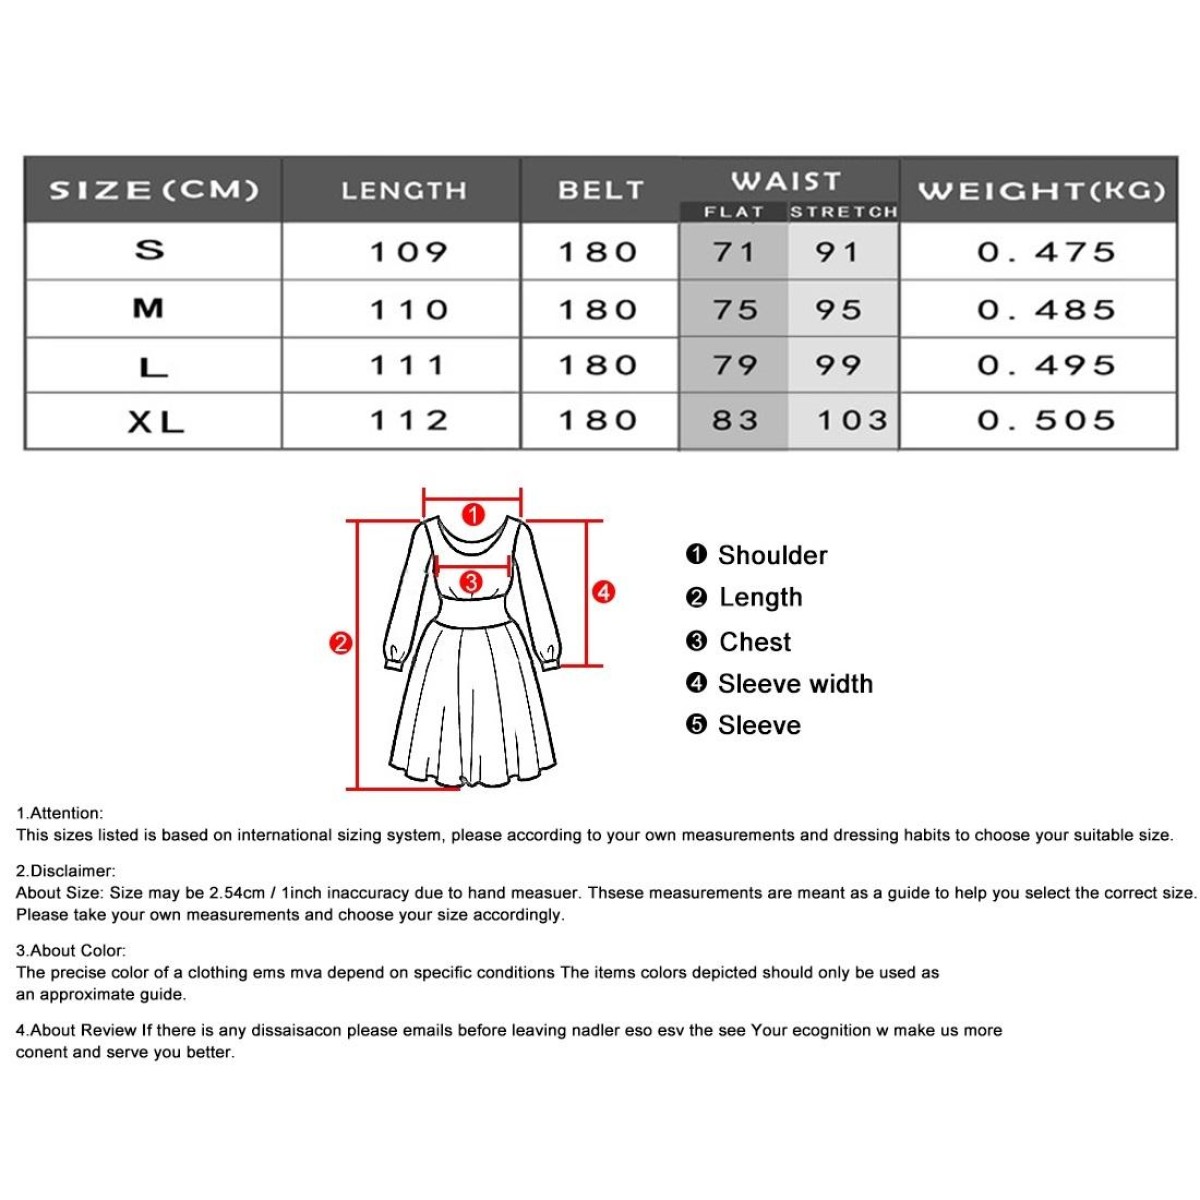 Ladies Feather Print Lace Slit Dress (Color:80212006 Size:S)